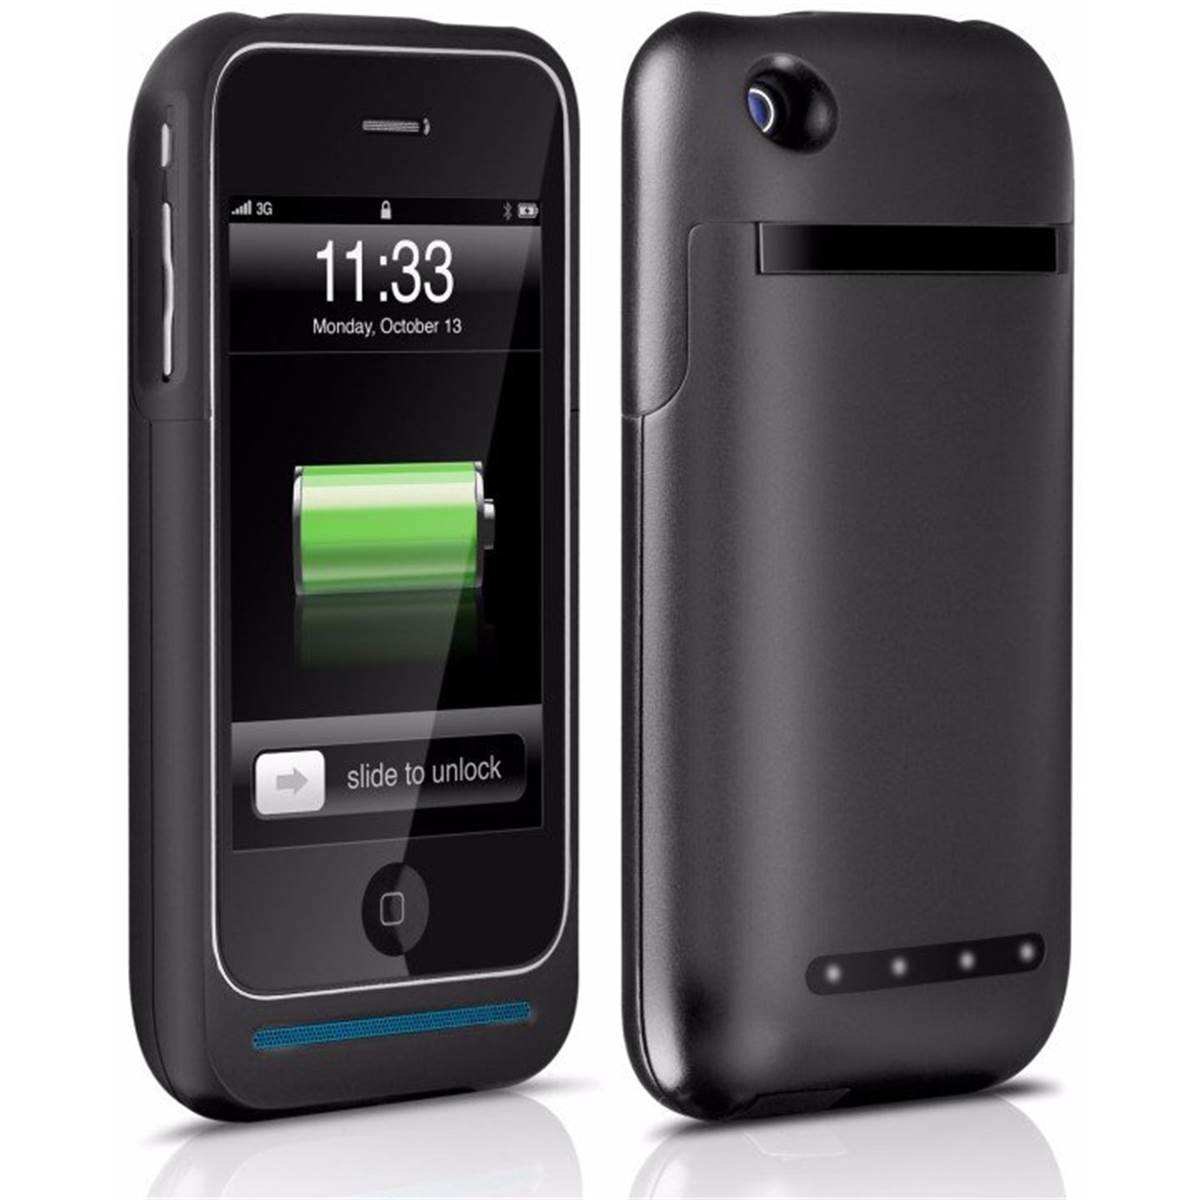 Coque + Batterie Externe Pour Iphone 3g/3gs